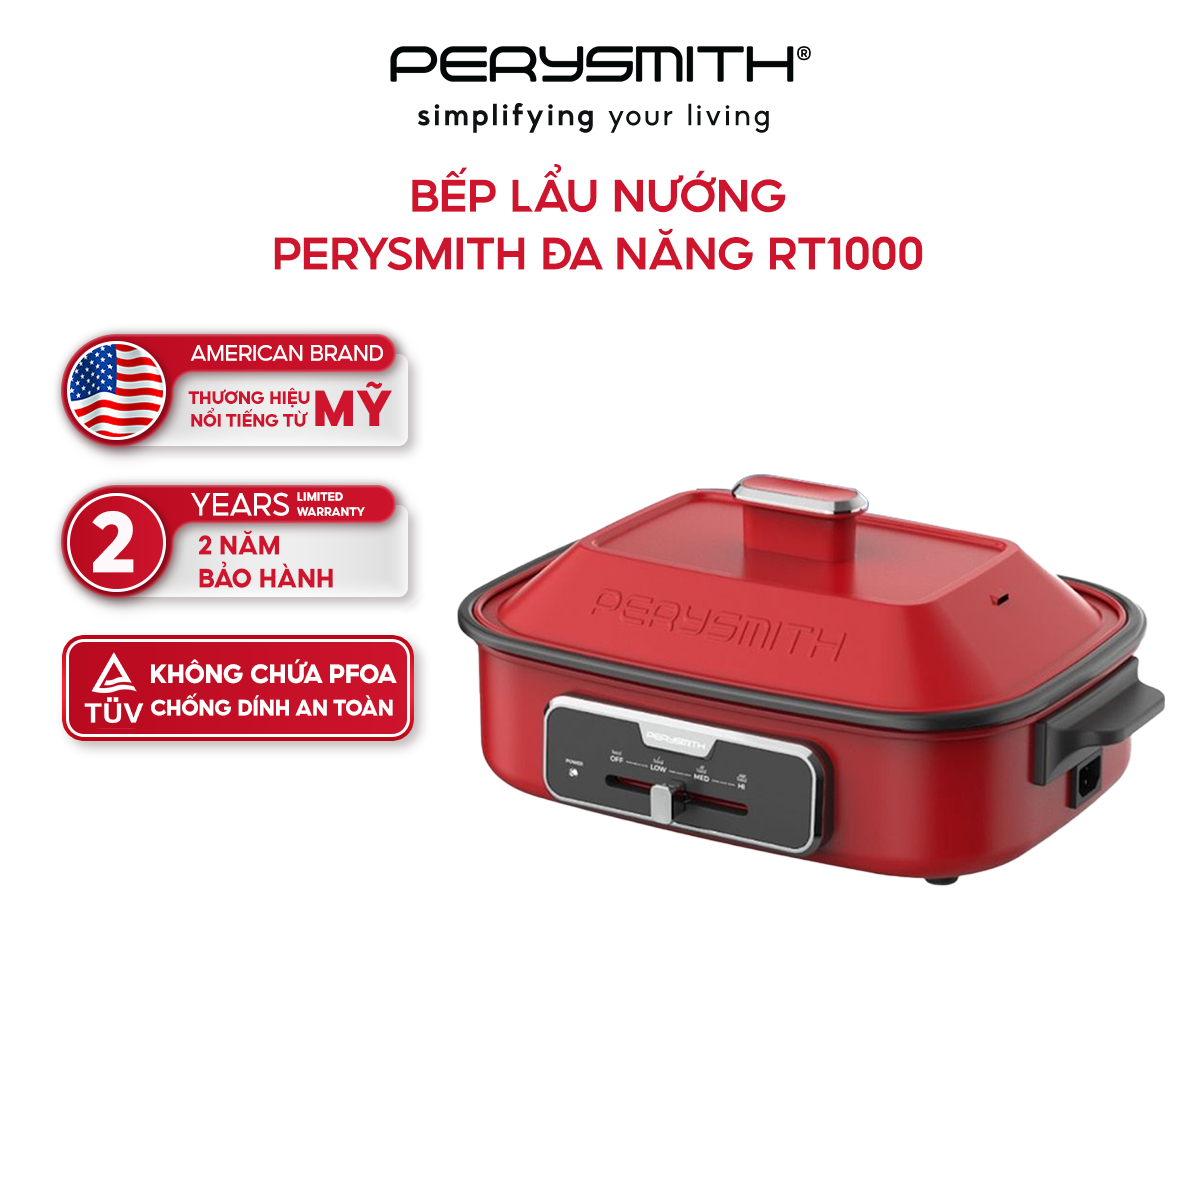 Bếp lẩu nướng Perysmith đa năng RT1000 - Hàng chính hãng